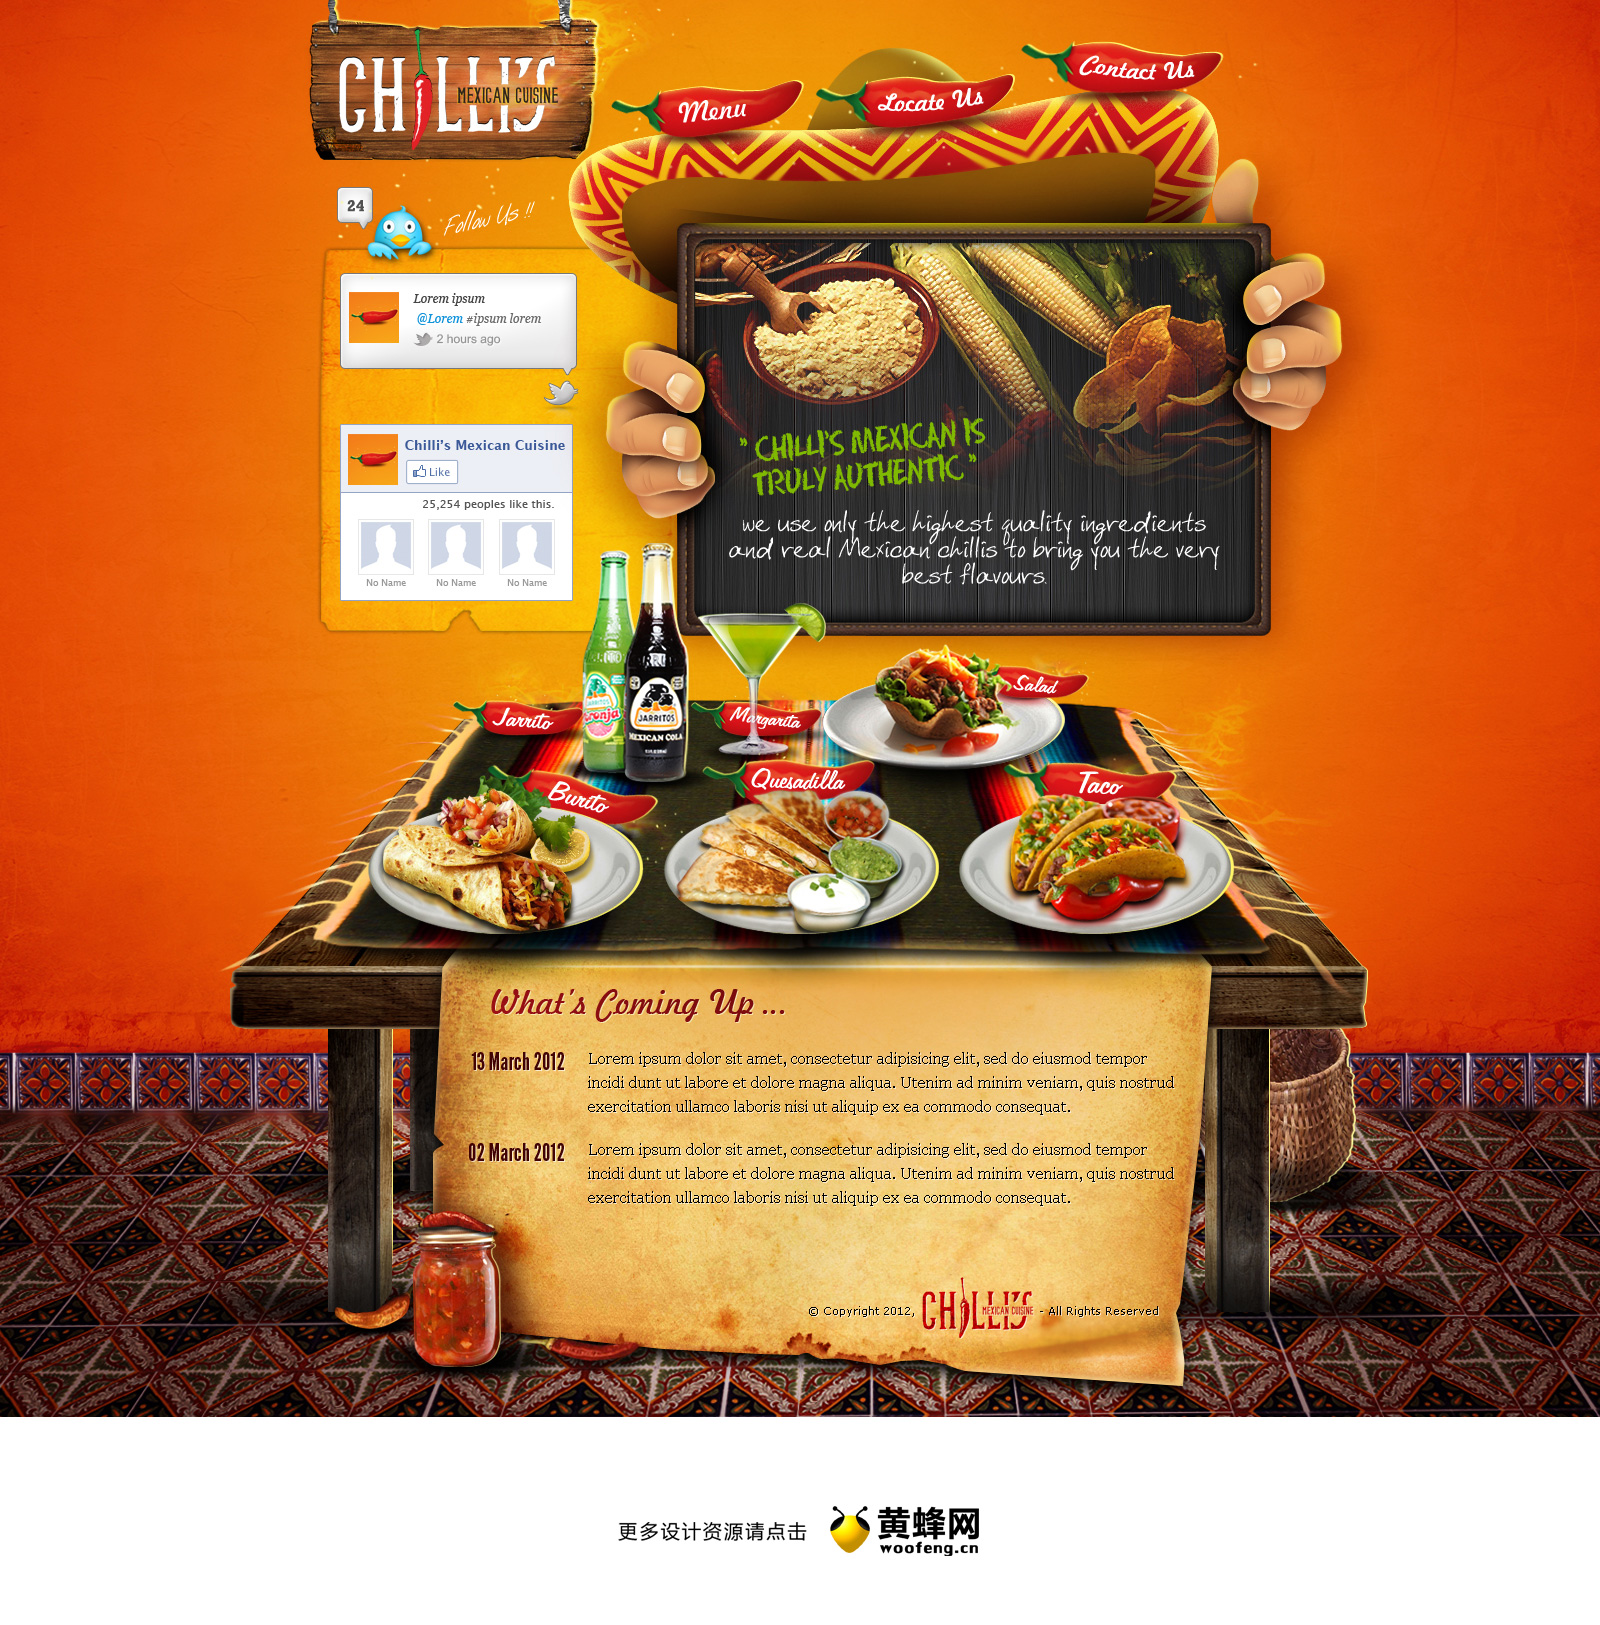 墨西哥食品网站截屏设计欣赏，来源自黄蜂网https://woofeng.cn/